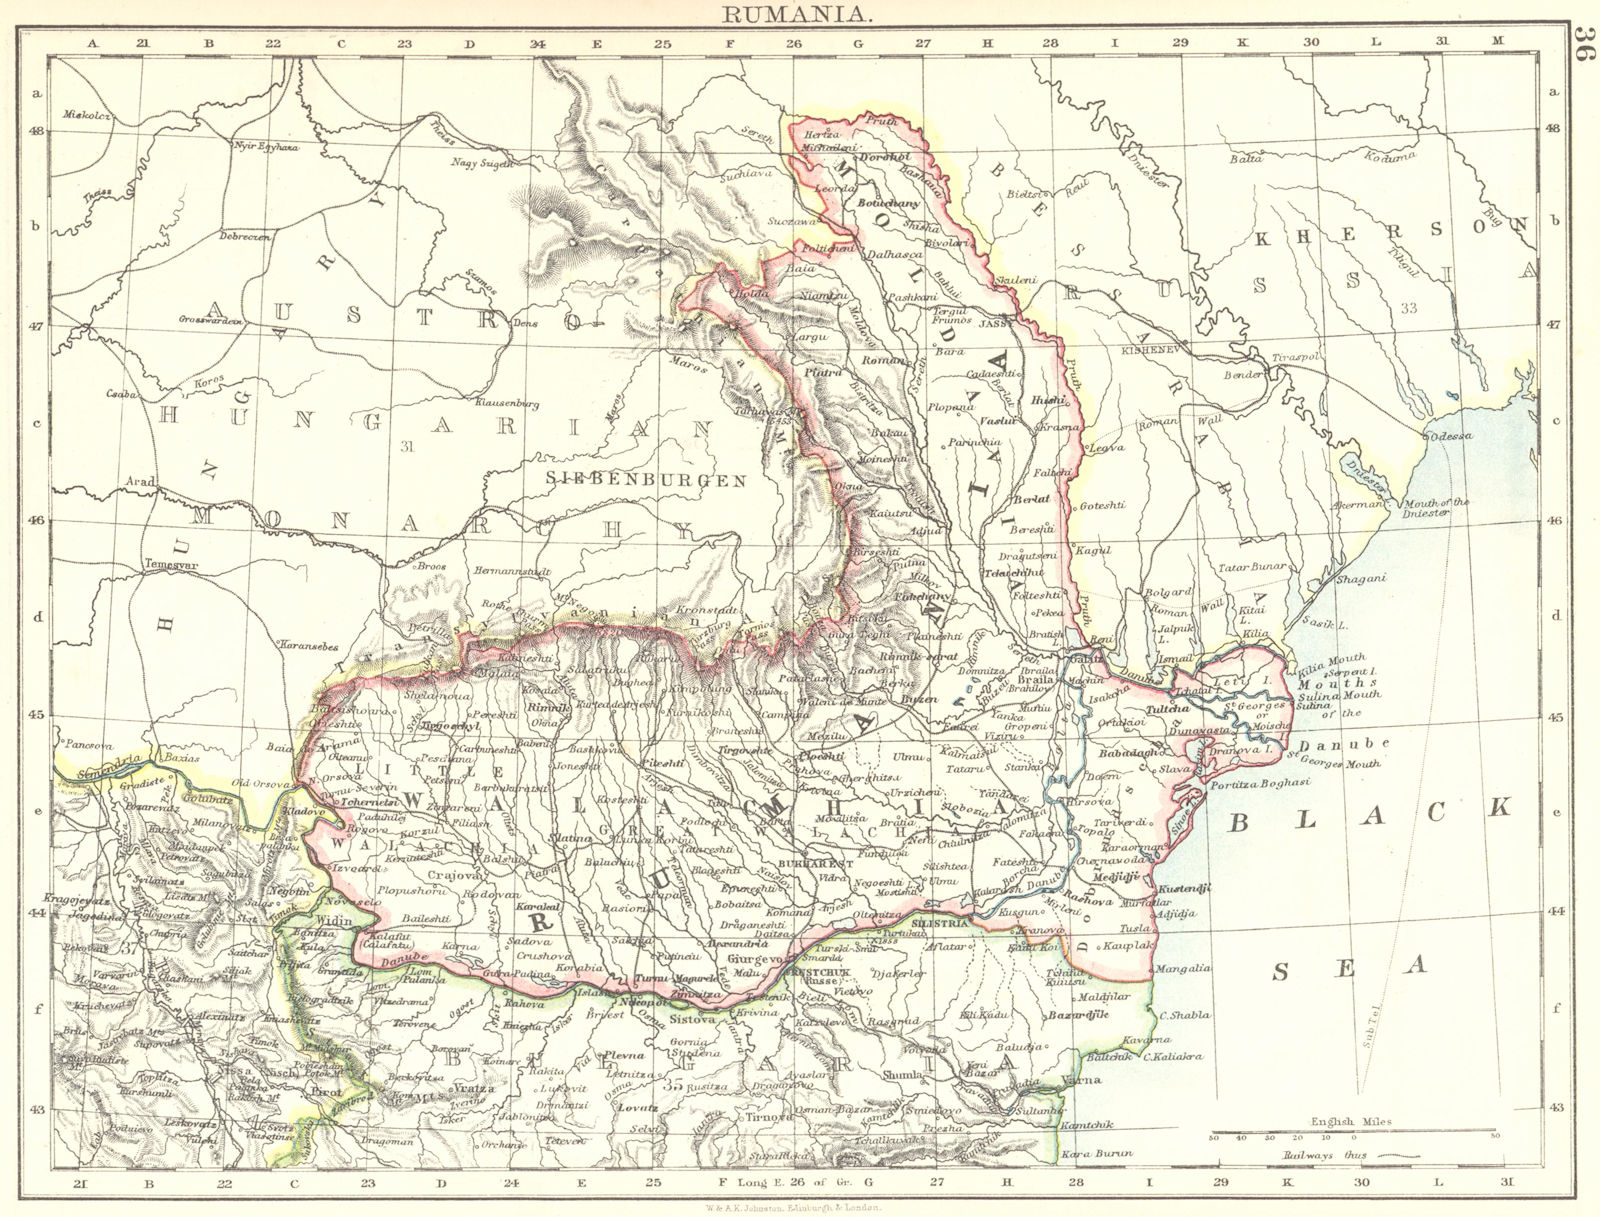 RUMANIA. Romania Wallachia Moldavia Moldova. Railways. JOHNSTON 1899 map